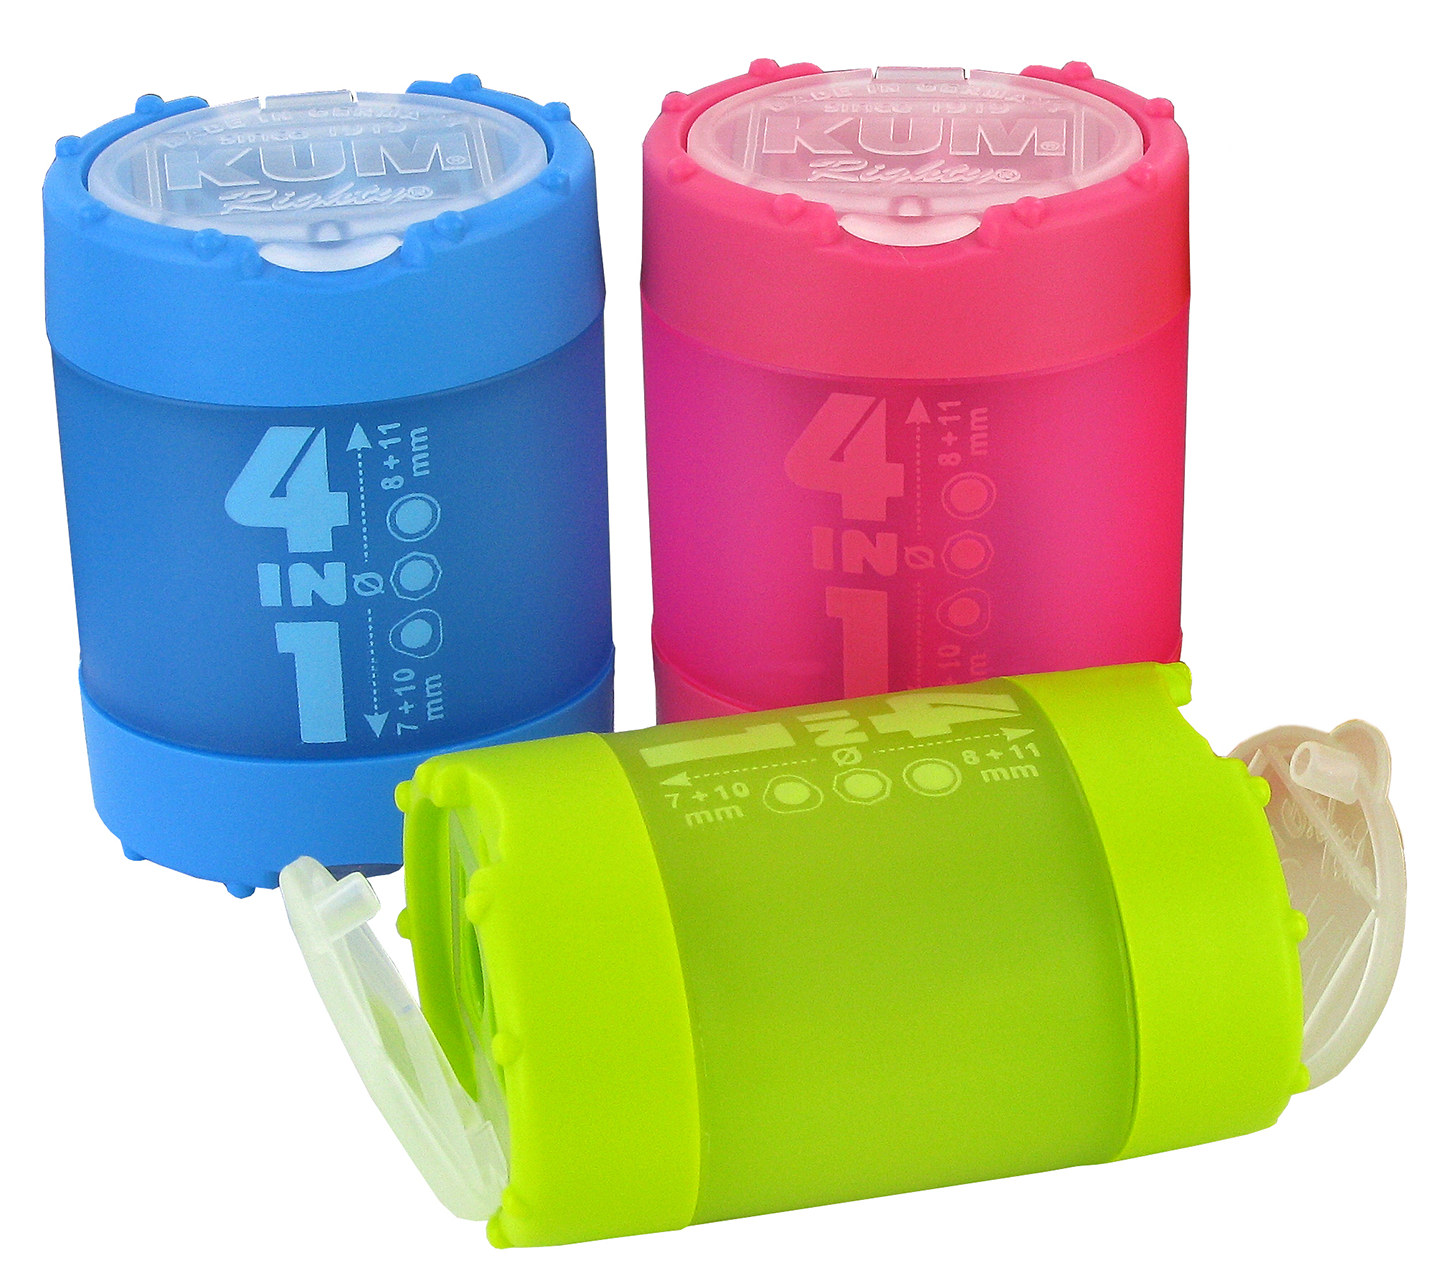 KUM Taille-Crayon avec récipient 5240823 bleu, vert, pink, ass. bleu, vert, pink, ass.